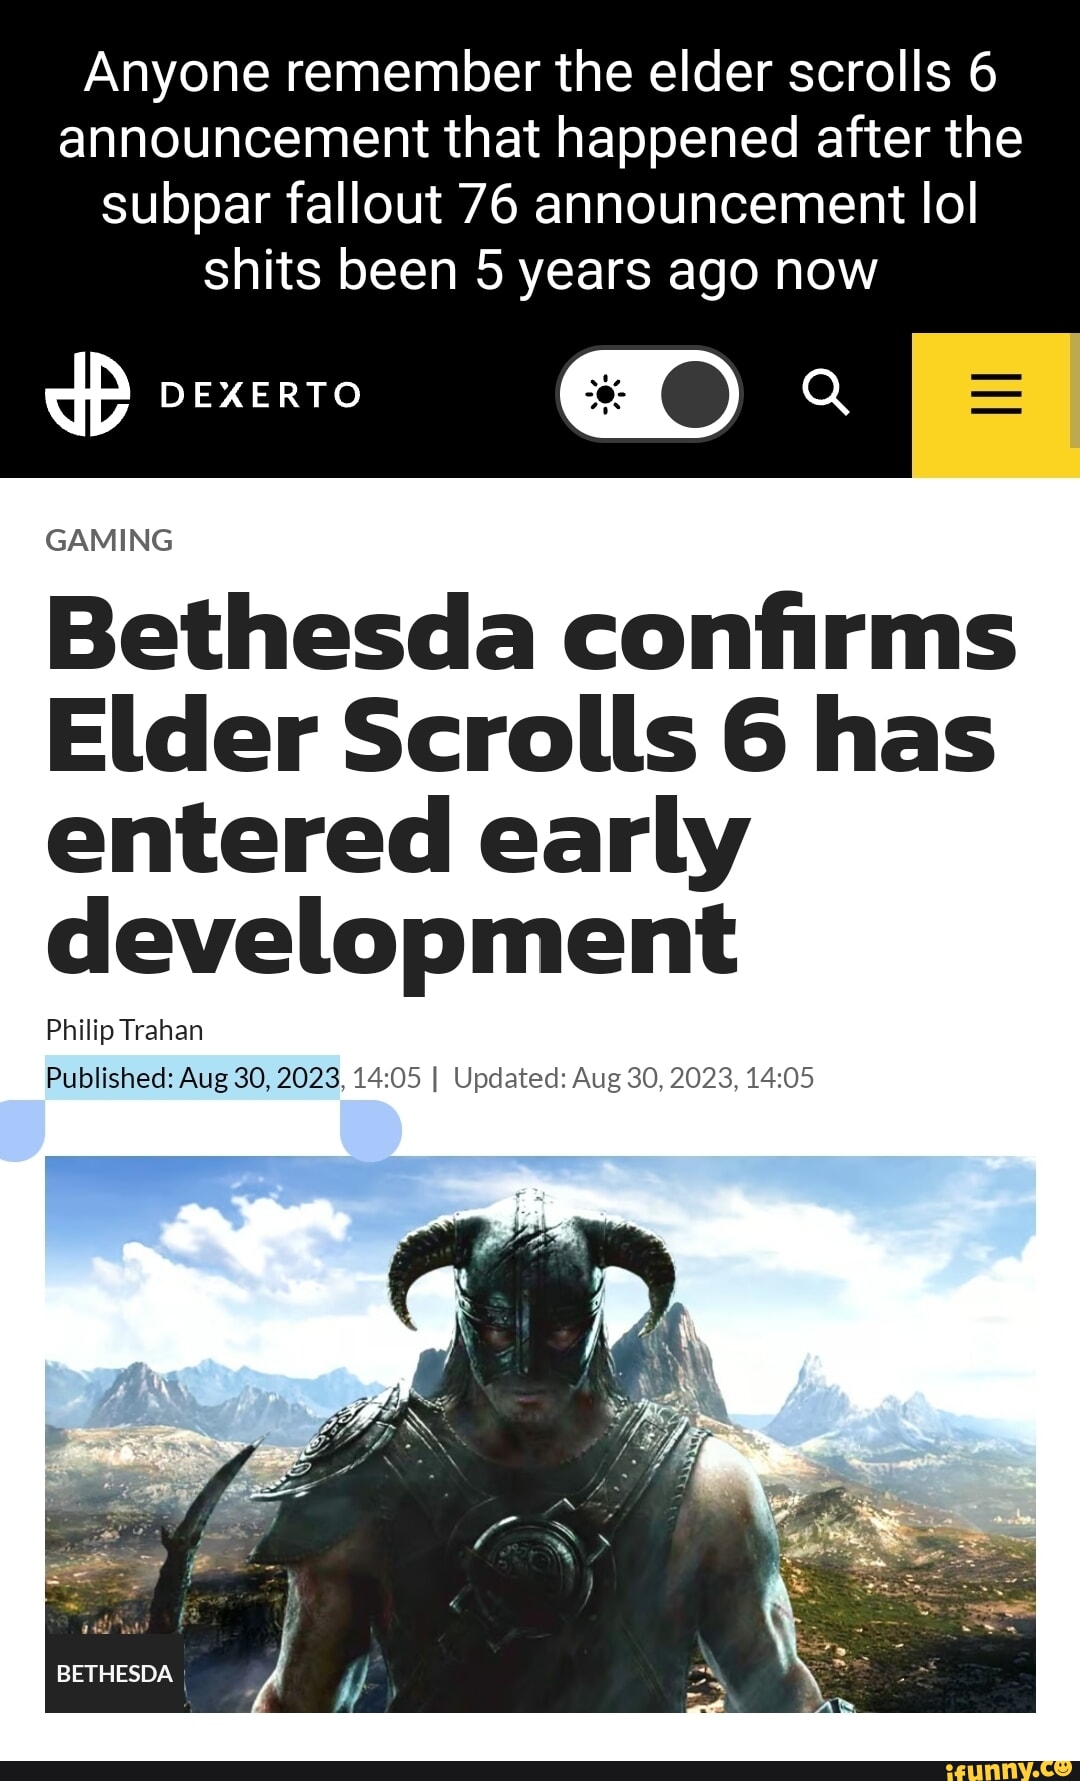 The Elder Scrolls 6 - Dexerto